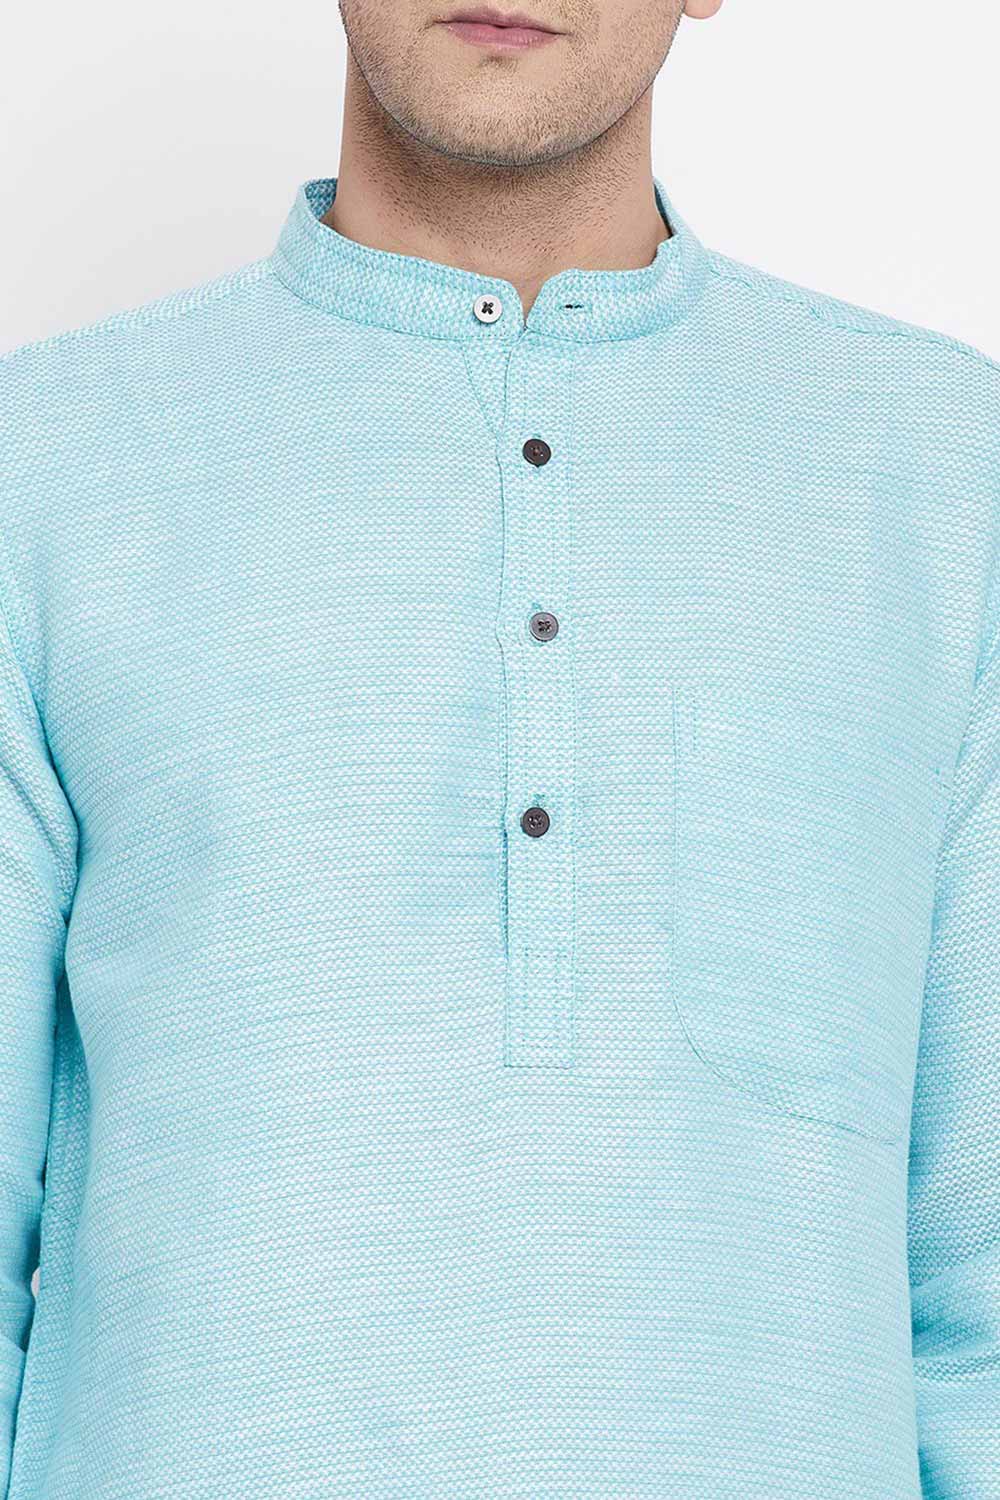 Buy Men's Rayon Stripe Printed Sherwani Kurta in Light Blue - Zoom Out